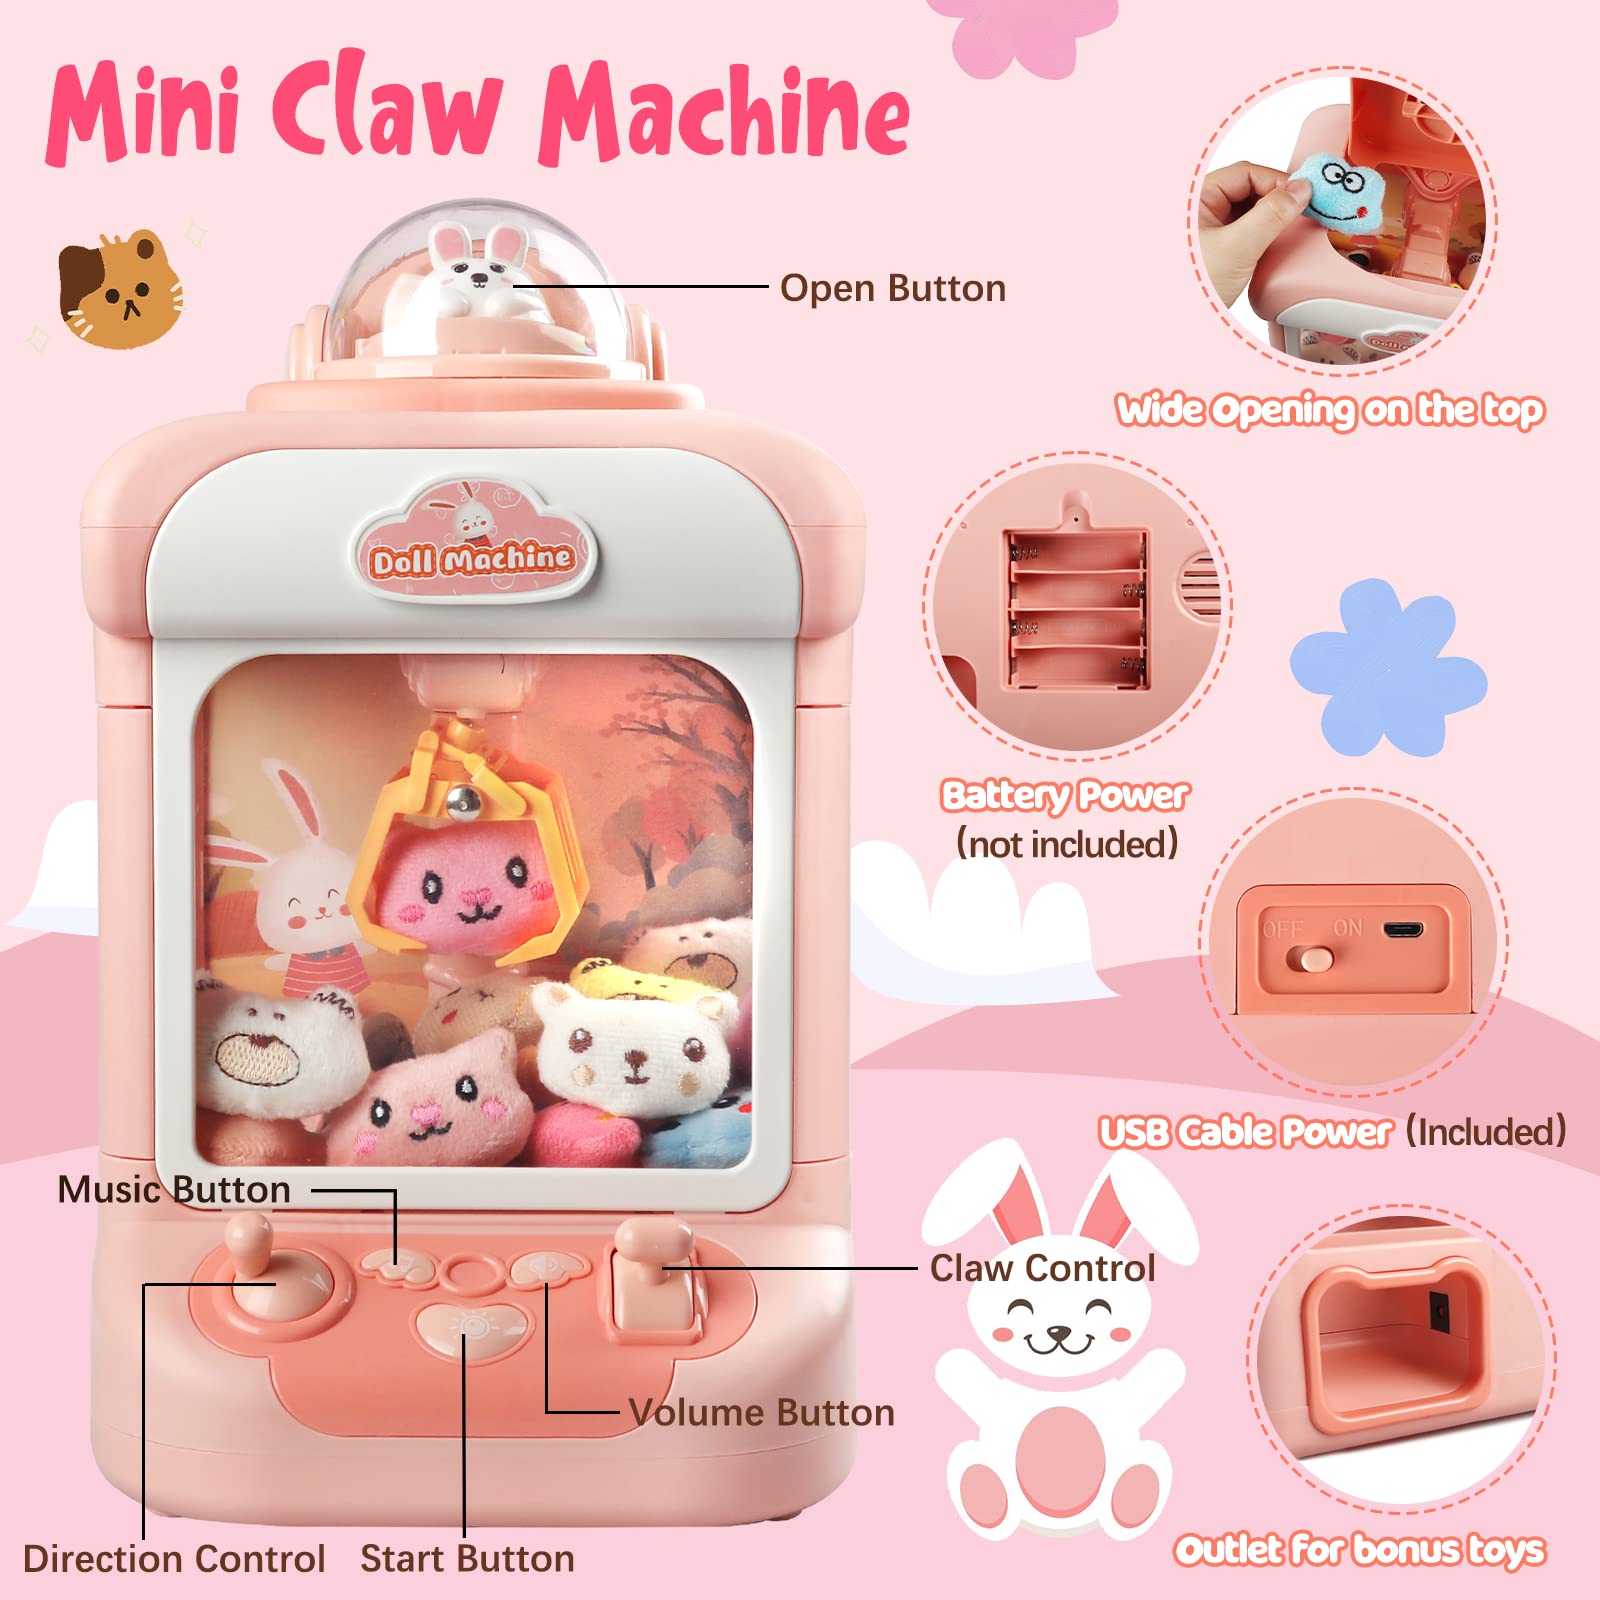 Soft toys Claw / free claw machine - Microsoft Apps